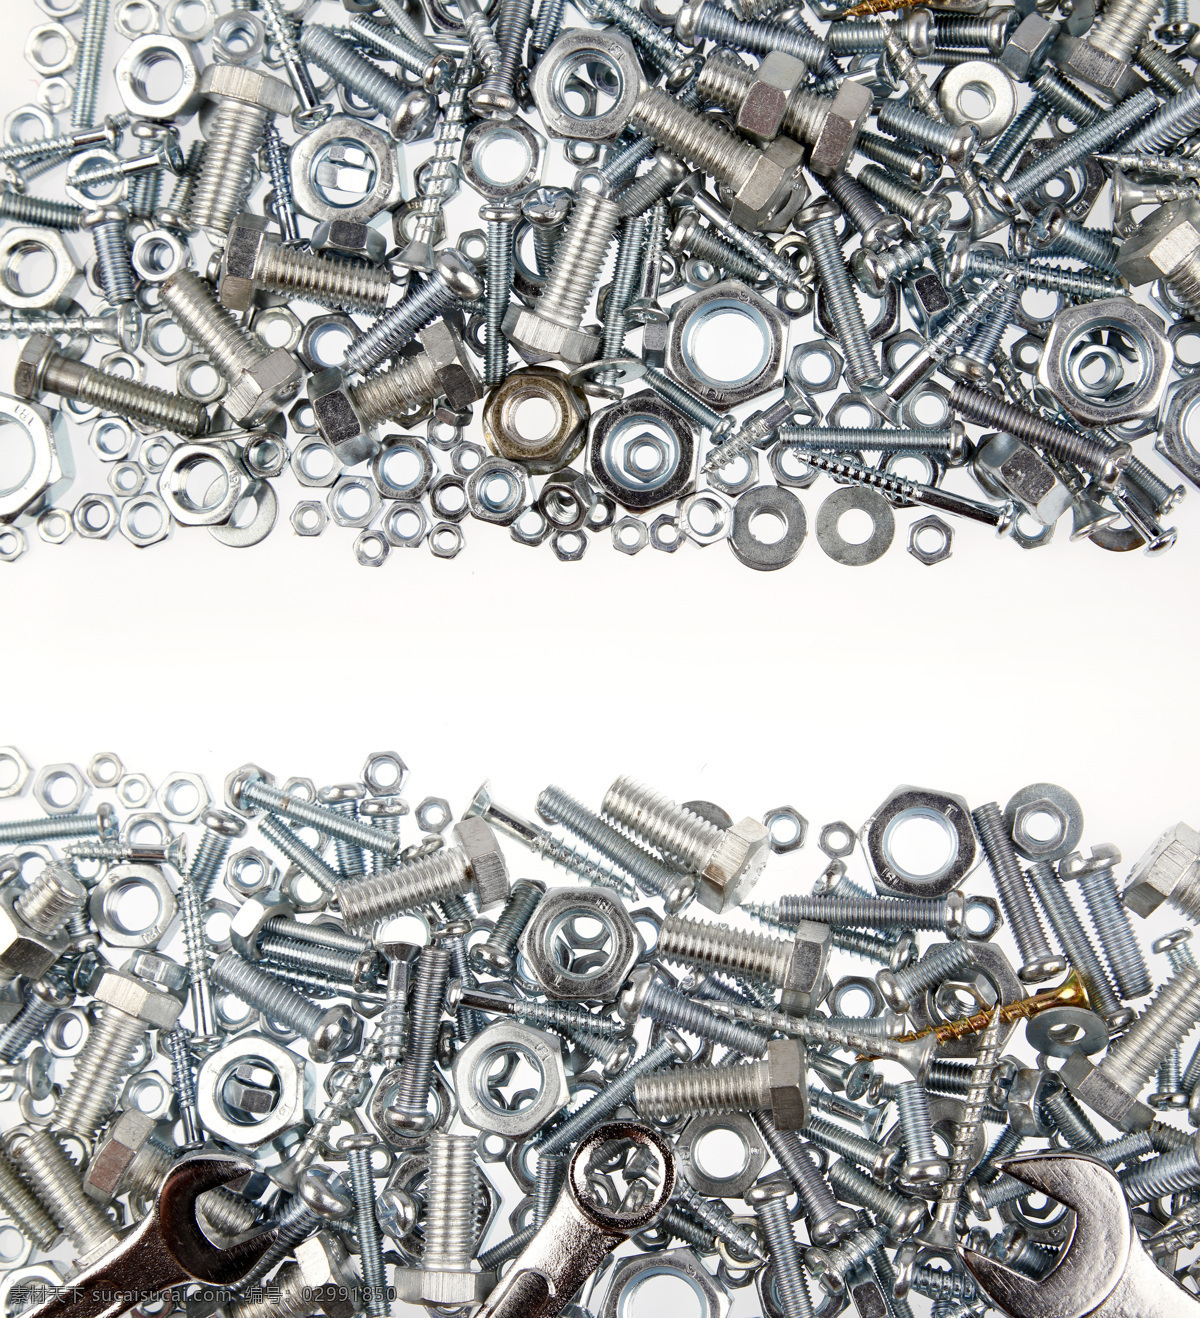 螺栓螺母工具 螺栓螺母 螺钉 螺栓 螺母 金属 质感 工业生产 现代科技 工具 生活用品 生活百科 白色